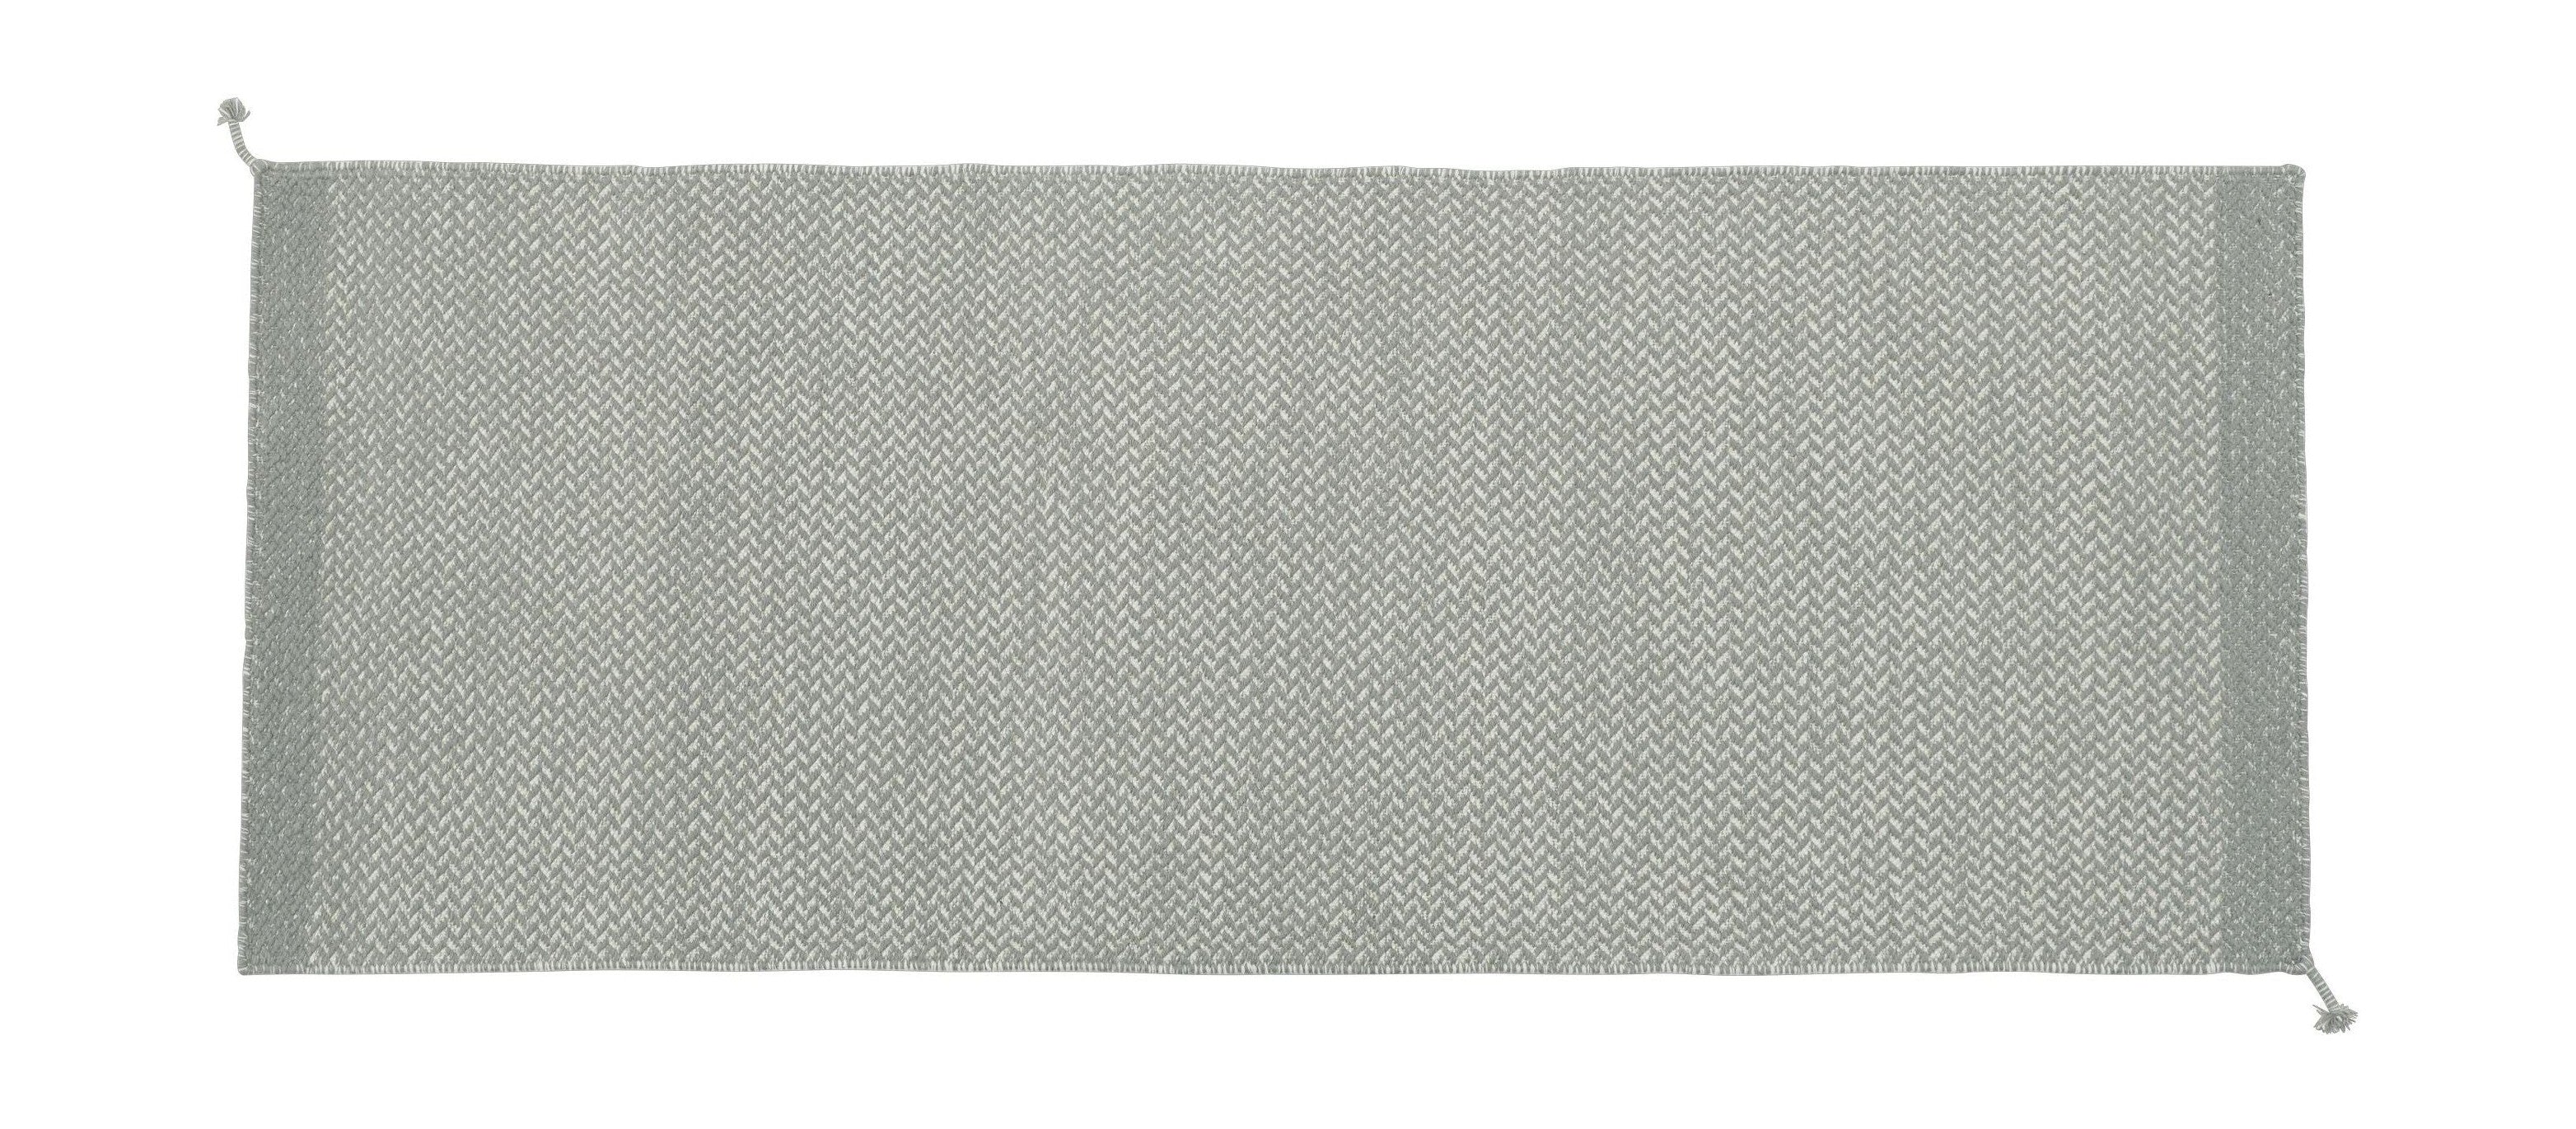 Muuto pli tapis gris, 200 x 80 cm